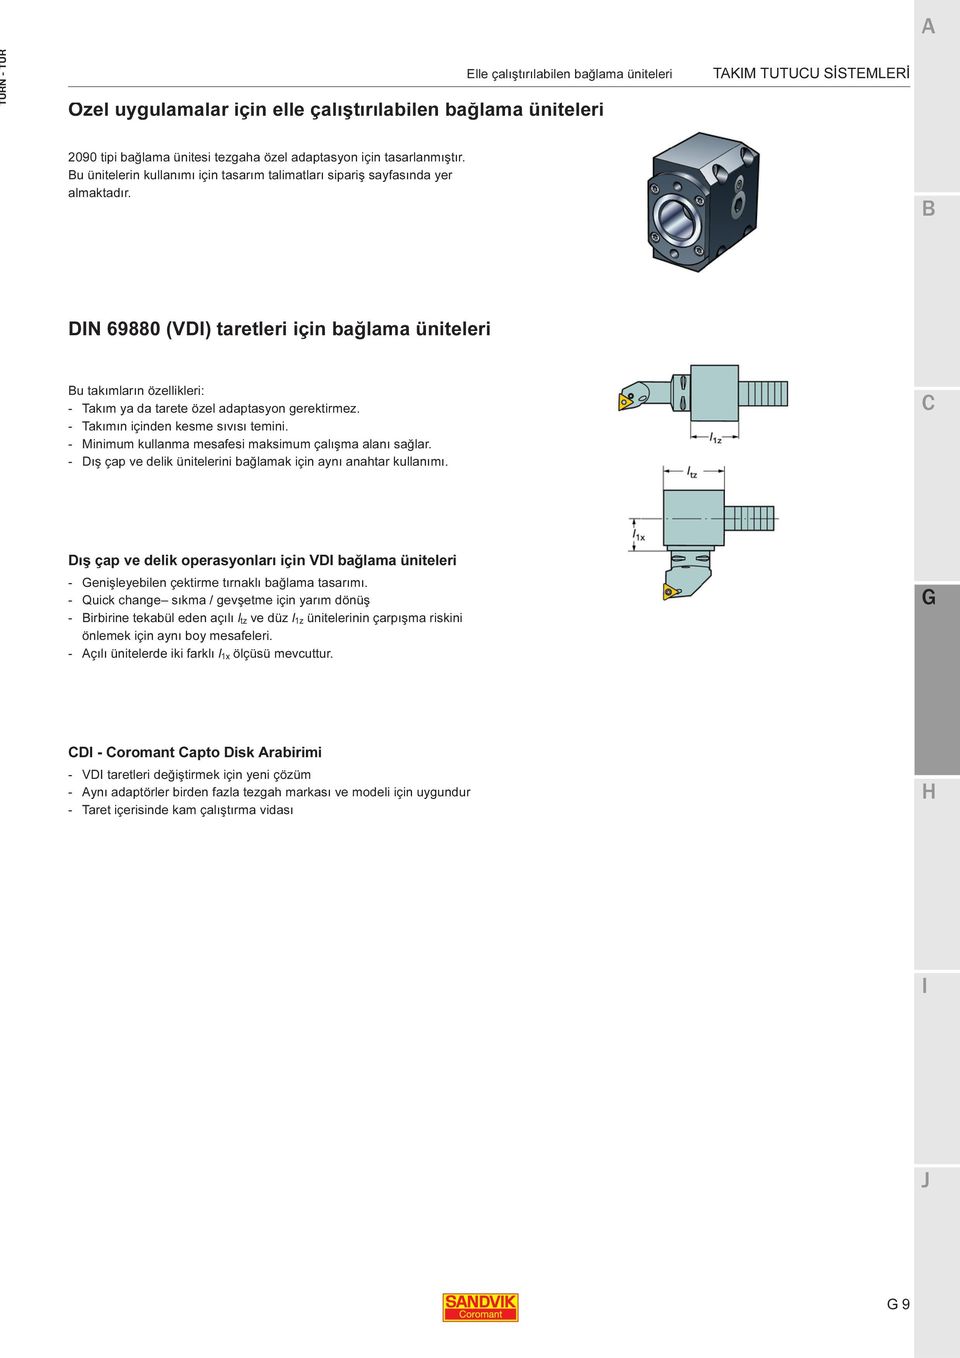 DN 69880 (VD) taretleri için bağlama üniteleri u takımların özellikleri: - Takım ya da tarete özel adaptasyon gerektirmez. - Takımın içinden kesme sıvısı temini.